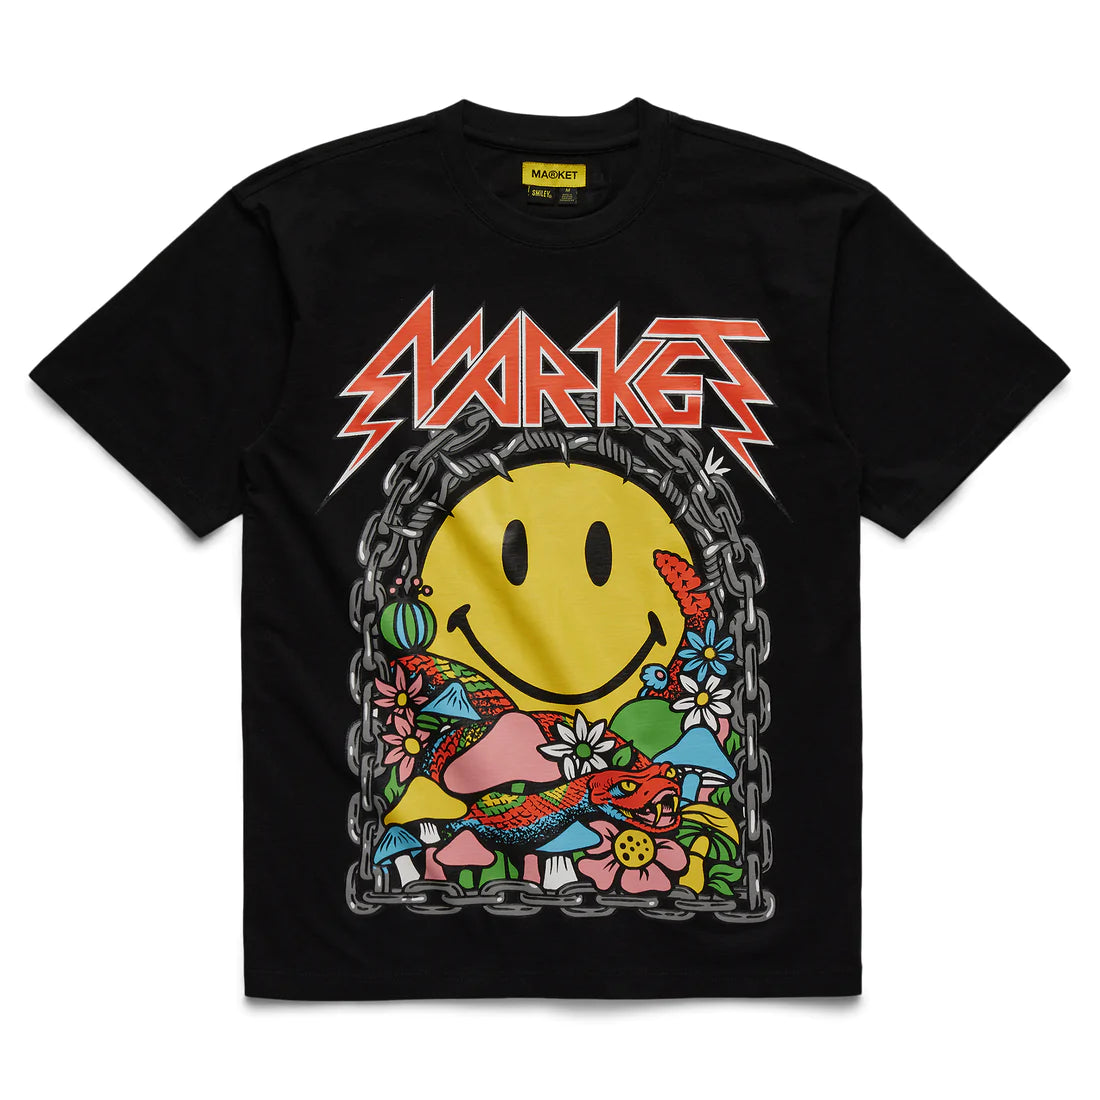 Smiley Iron Market T-Shirt